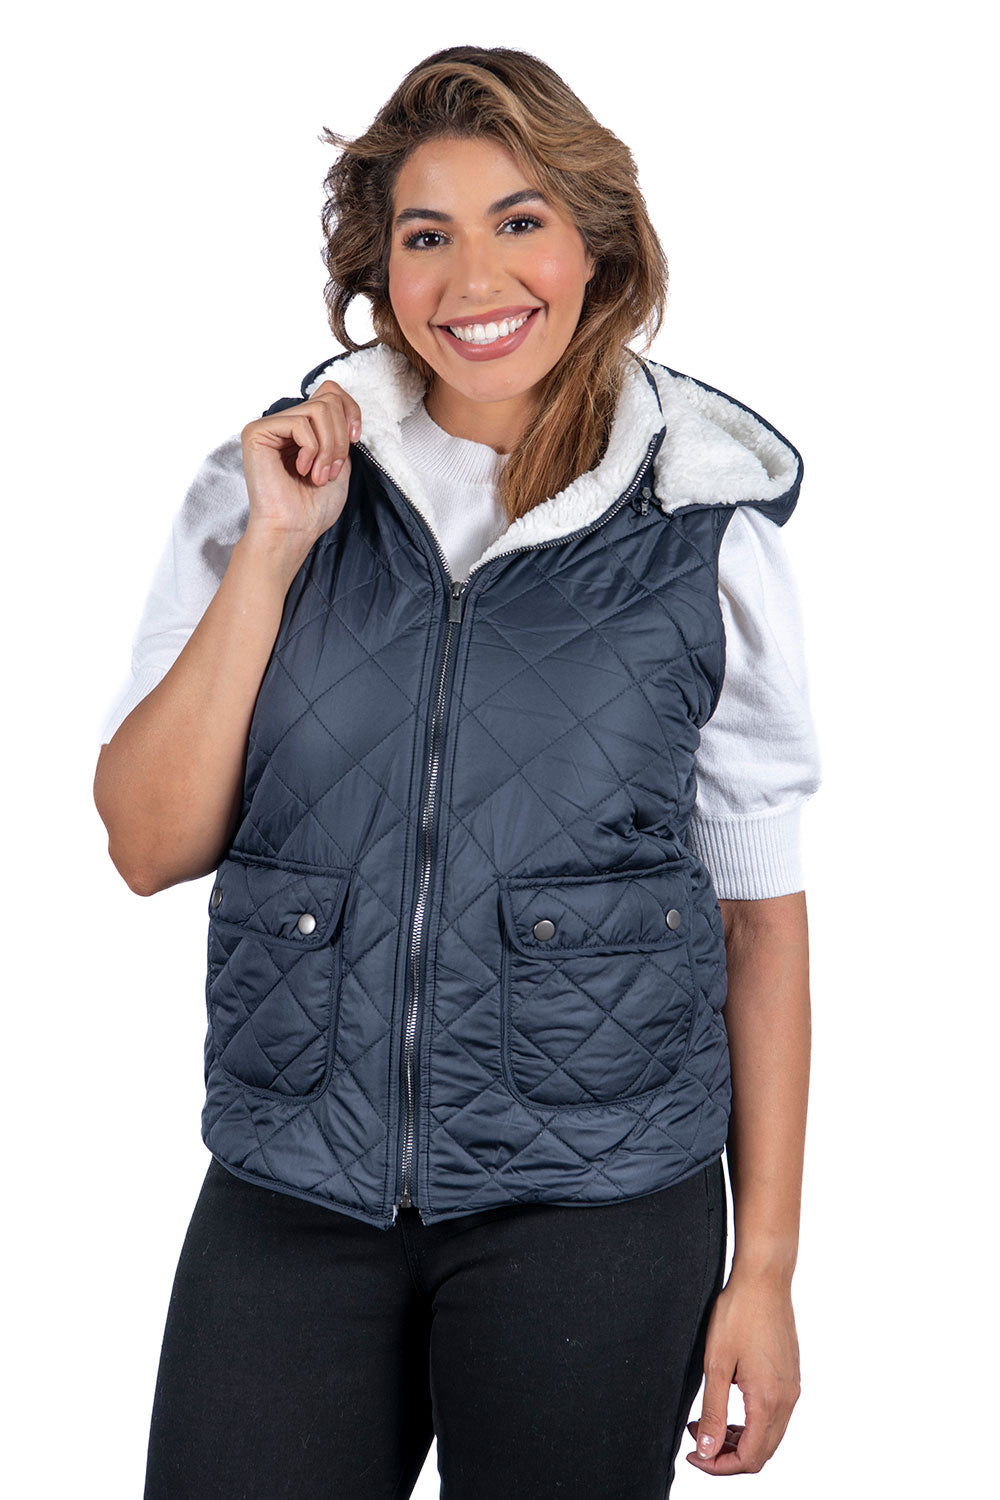 Women's Fur Hooded Vests (S-M-L-XL / 6-12-12-6) 36 pcs